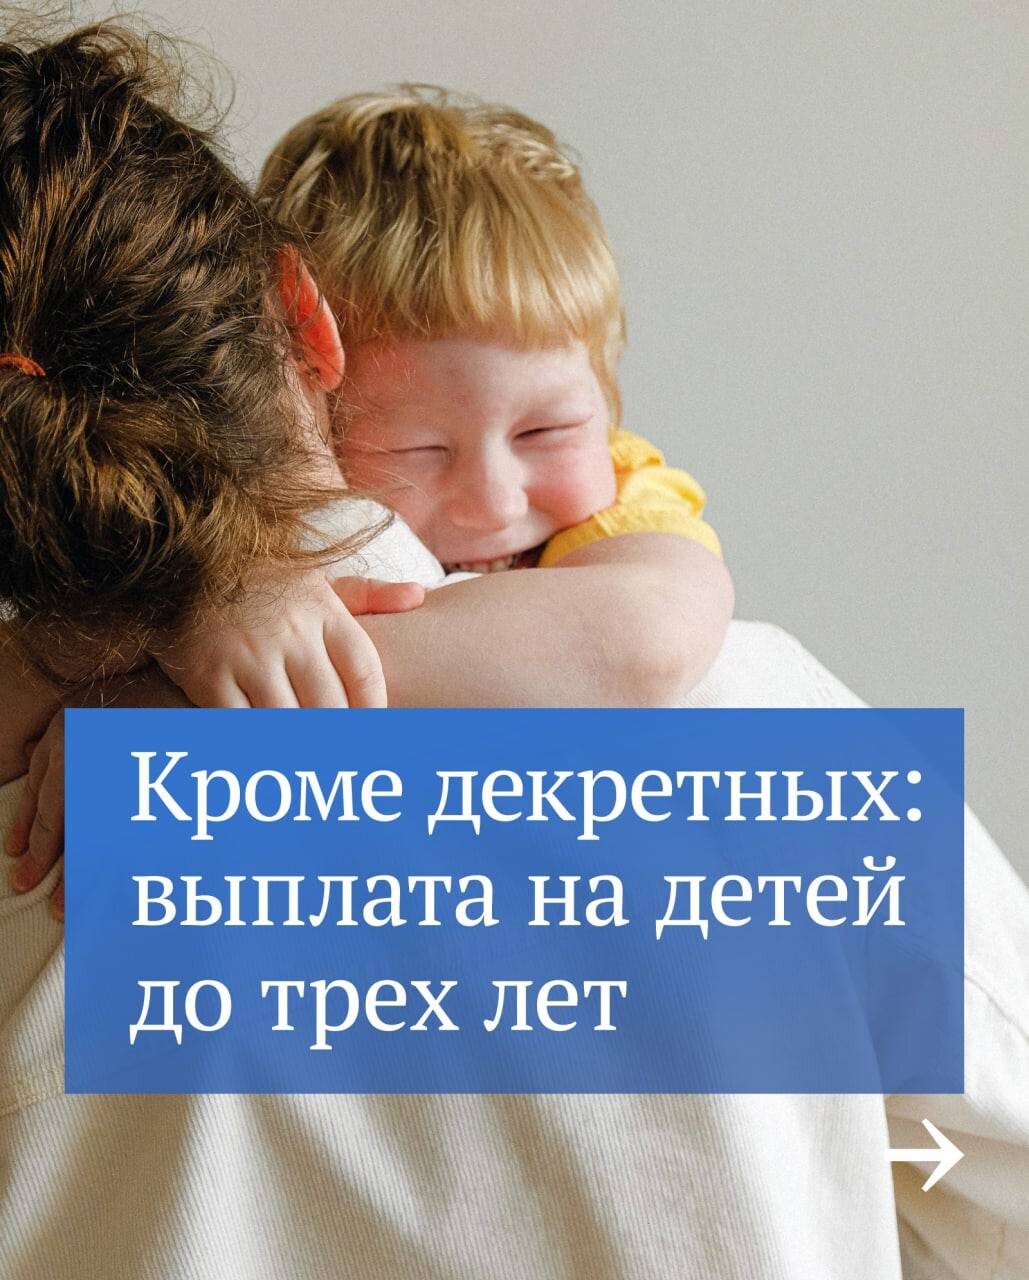 Мамочки пособия в контакт новосибирска детские